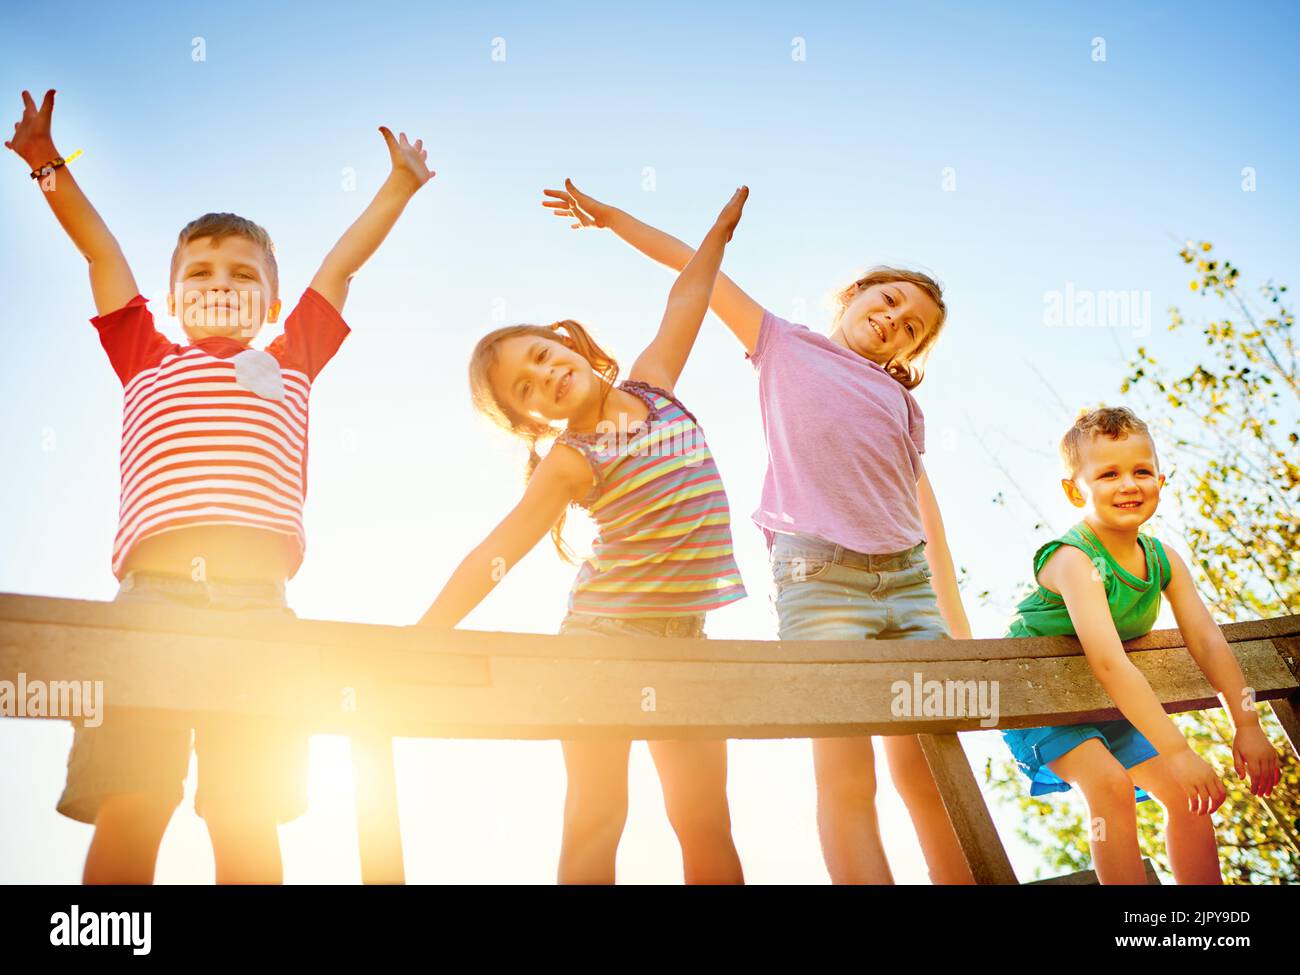 Zeit für unendlichen Spaß in der Sonne. Porträt einer Gruppe von kleinen Kindern, die im Freien zusammen spielen. Stockfoto